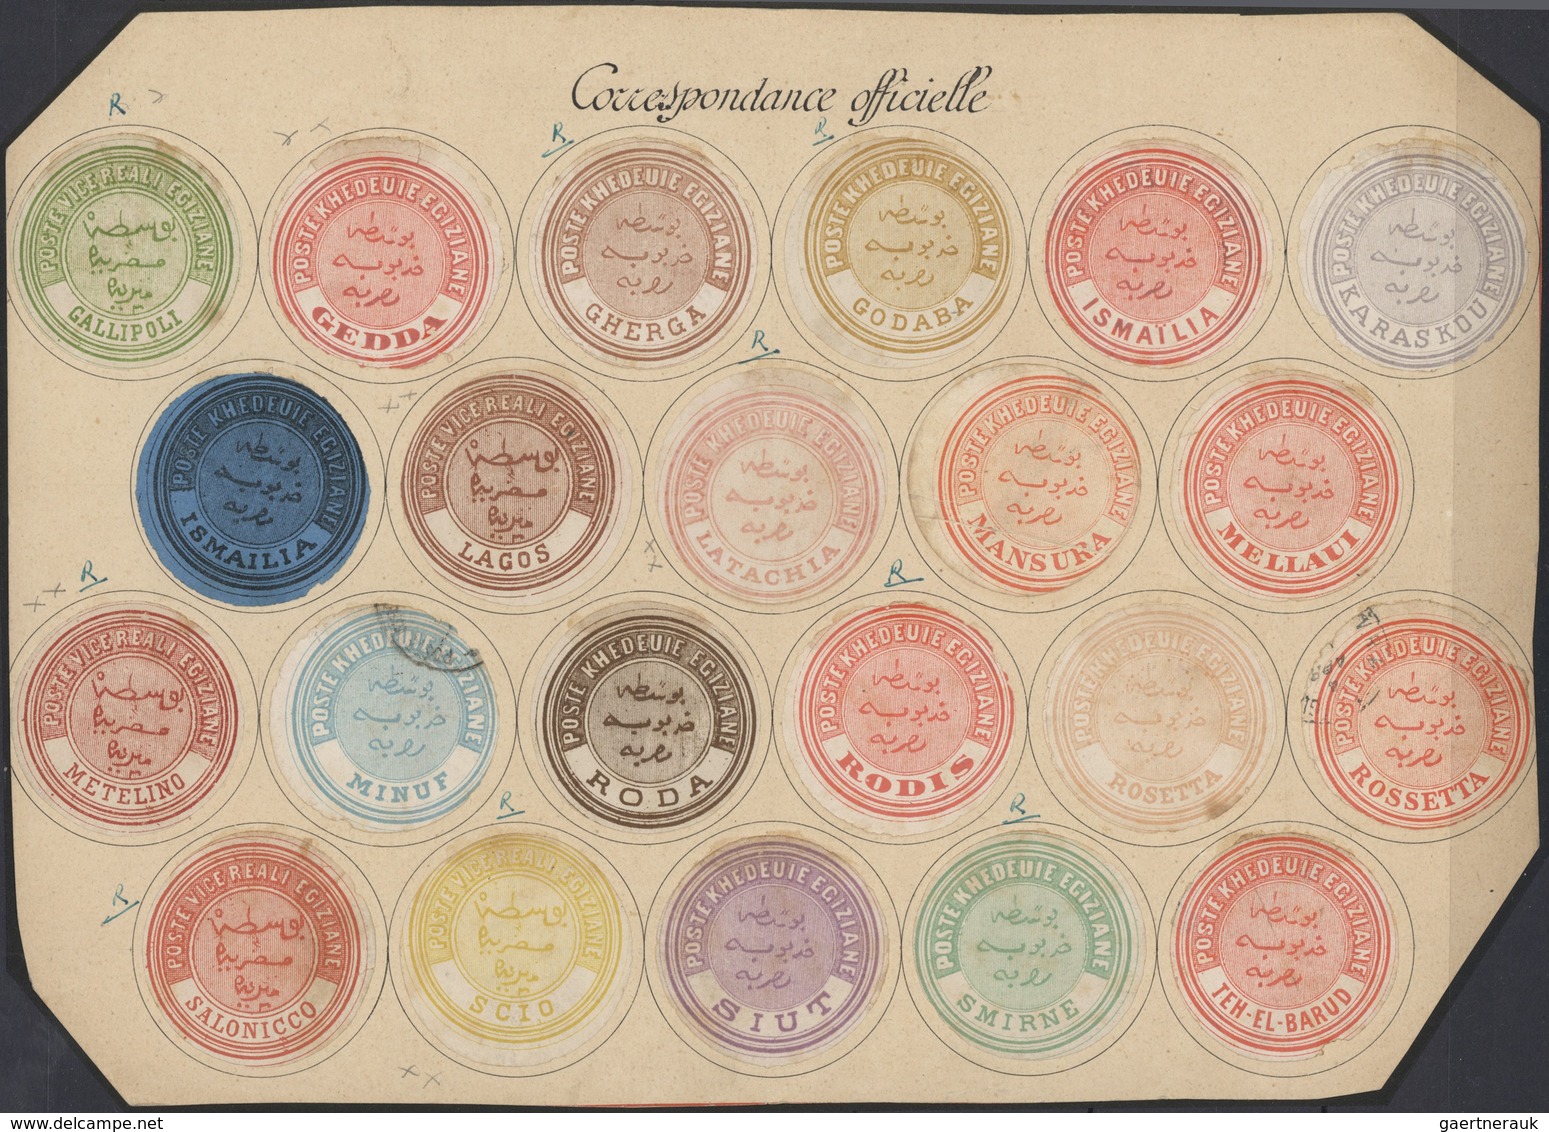 Ägypten - Dienstmarken: 1864/1892 (ca.), INTERPOSTALS, collection of apprx. 148 interpostal seals in